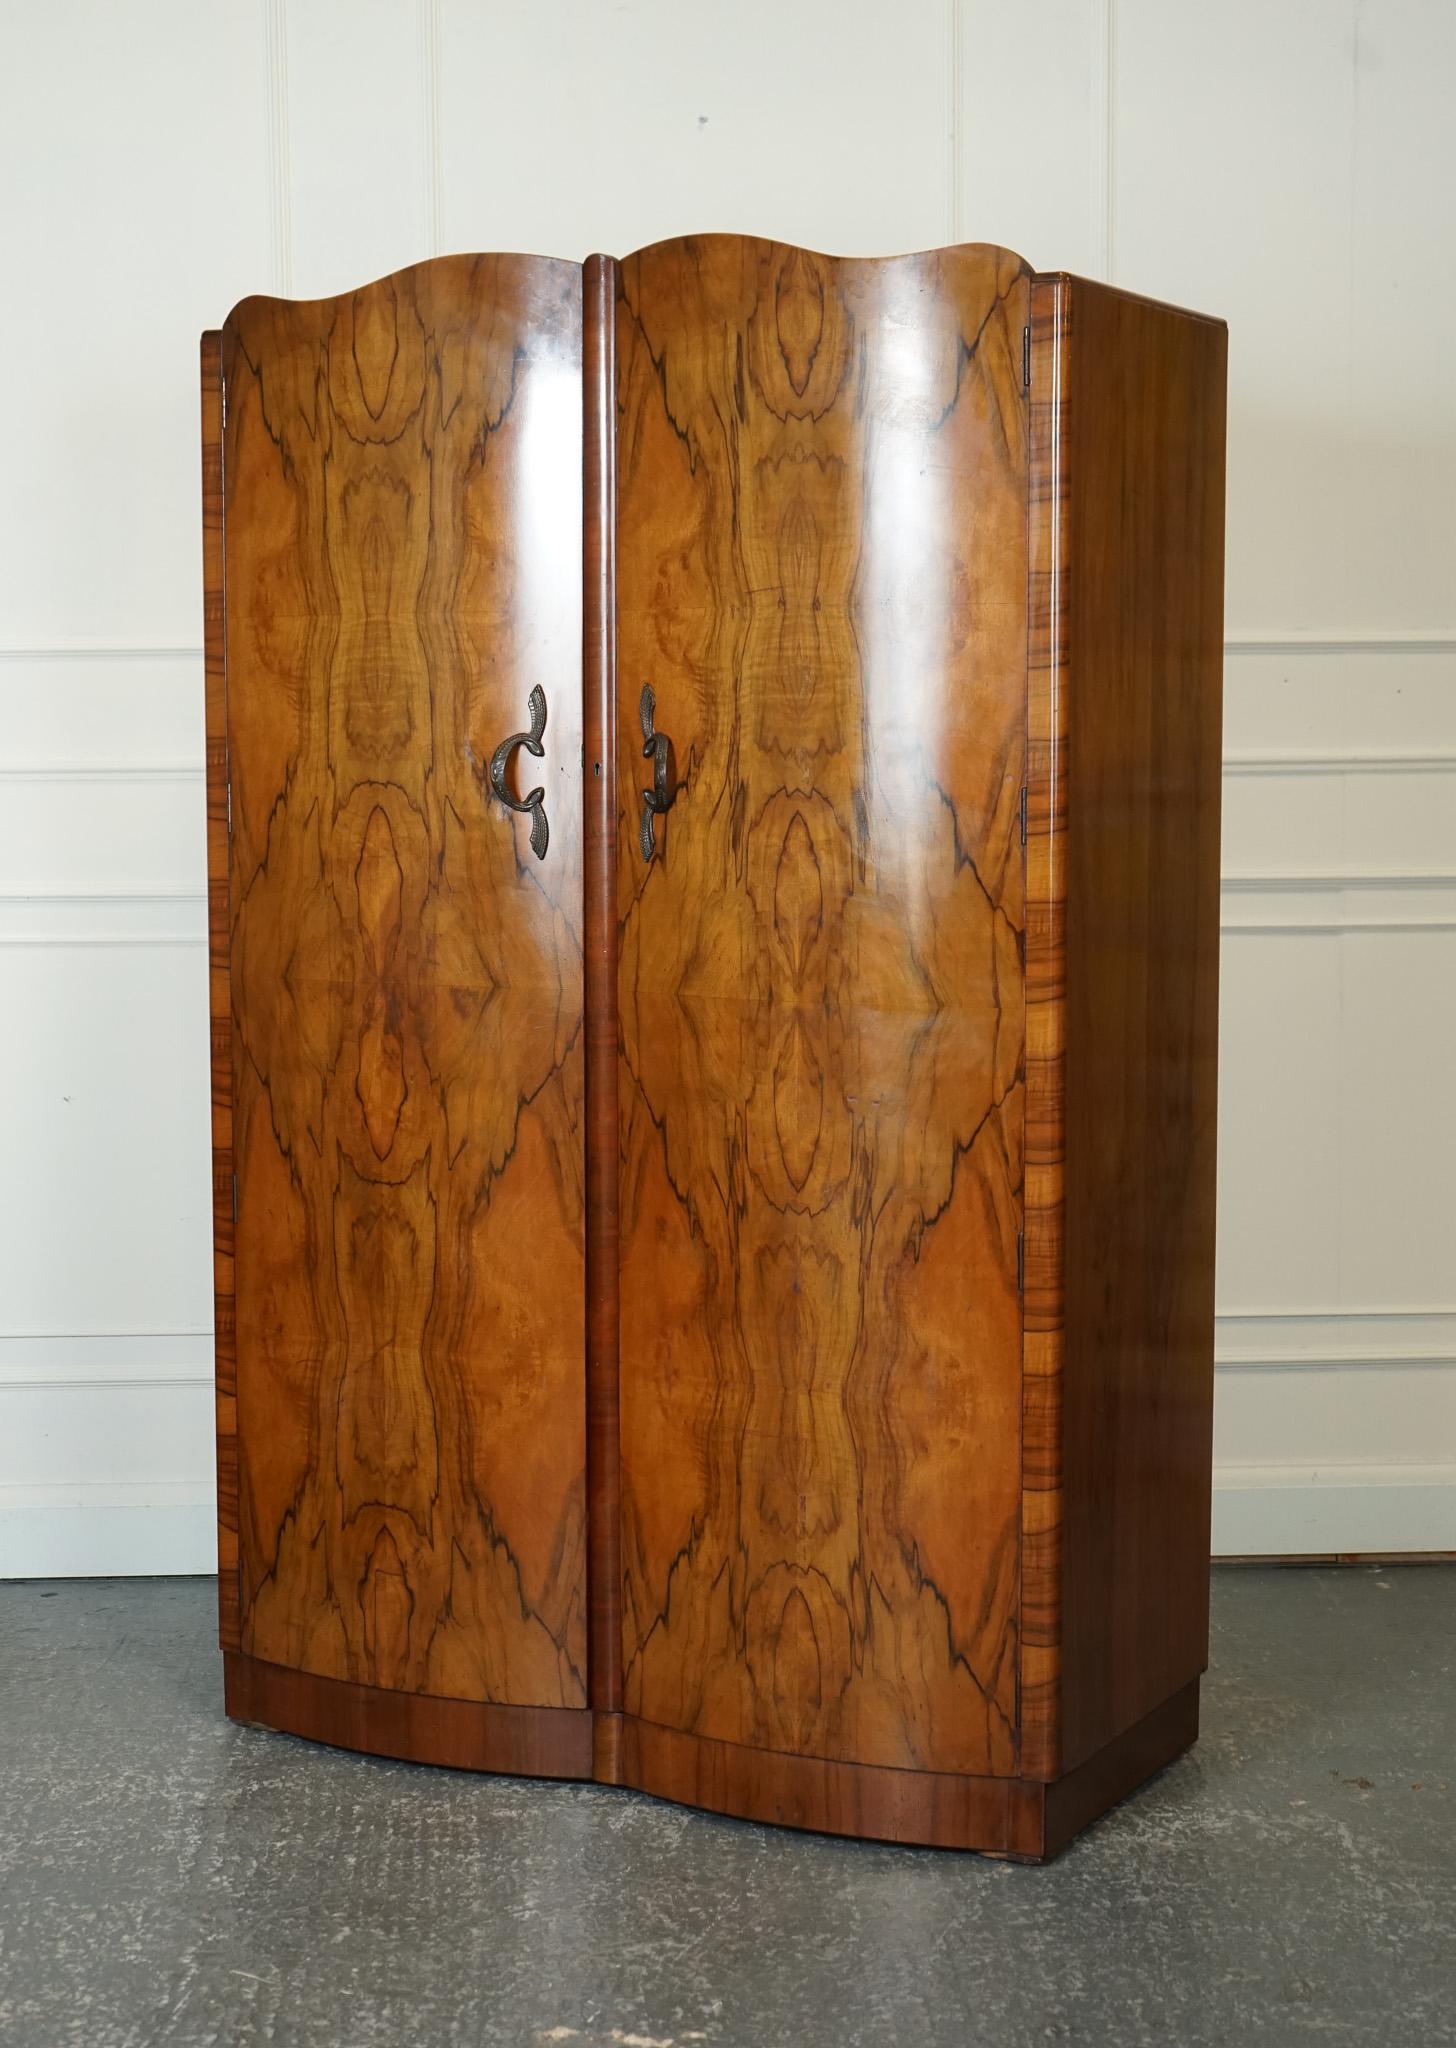 Antiquitäten aus London



Wir freuen uns, diesen großen Art Deco Doppelschrank aus Wurzelnussholz aus den 1920er Jahren zum Verkauf anzubieten.

Dieser große Doppelschrank aus Wurzelnussholz ist ein atemberaubendes Beispiel für das Art-déco-Design